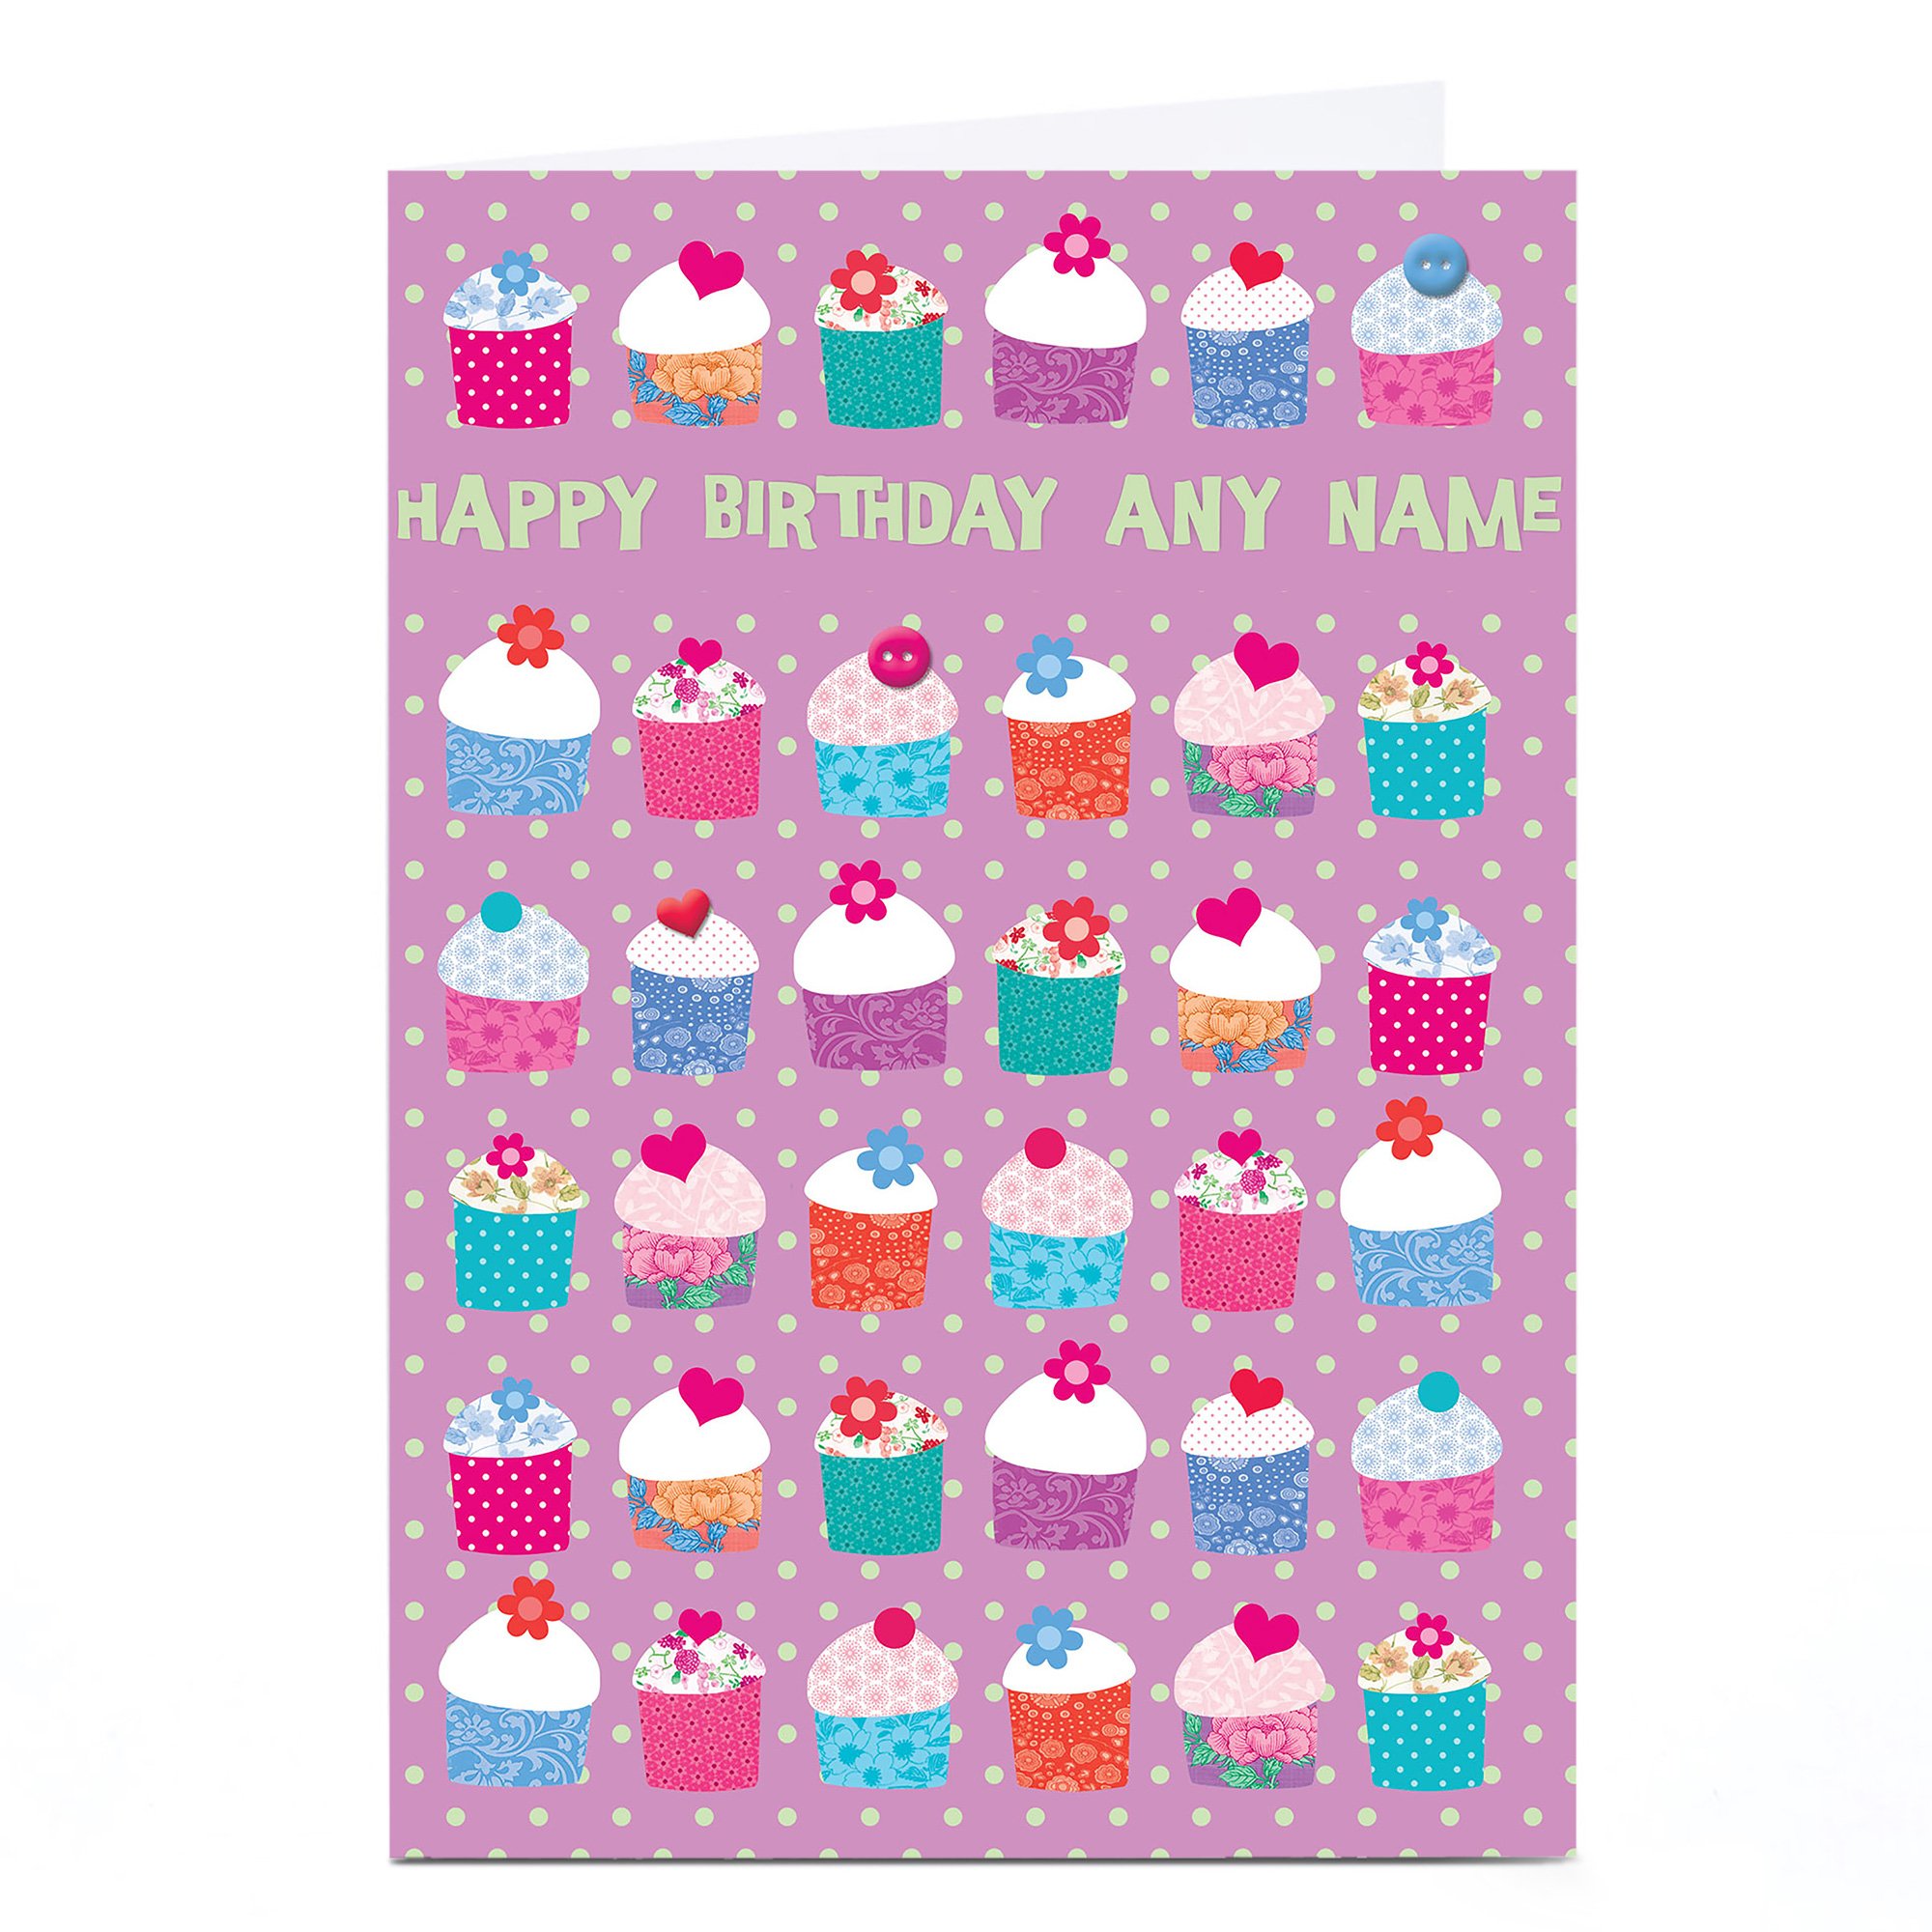 Personalised Birthday Card - Polka Dot Cupcakes